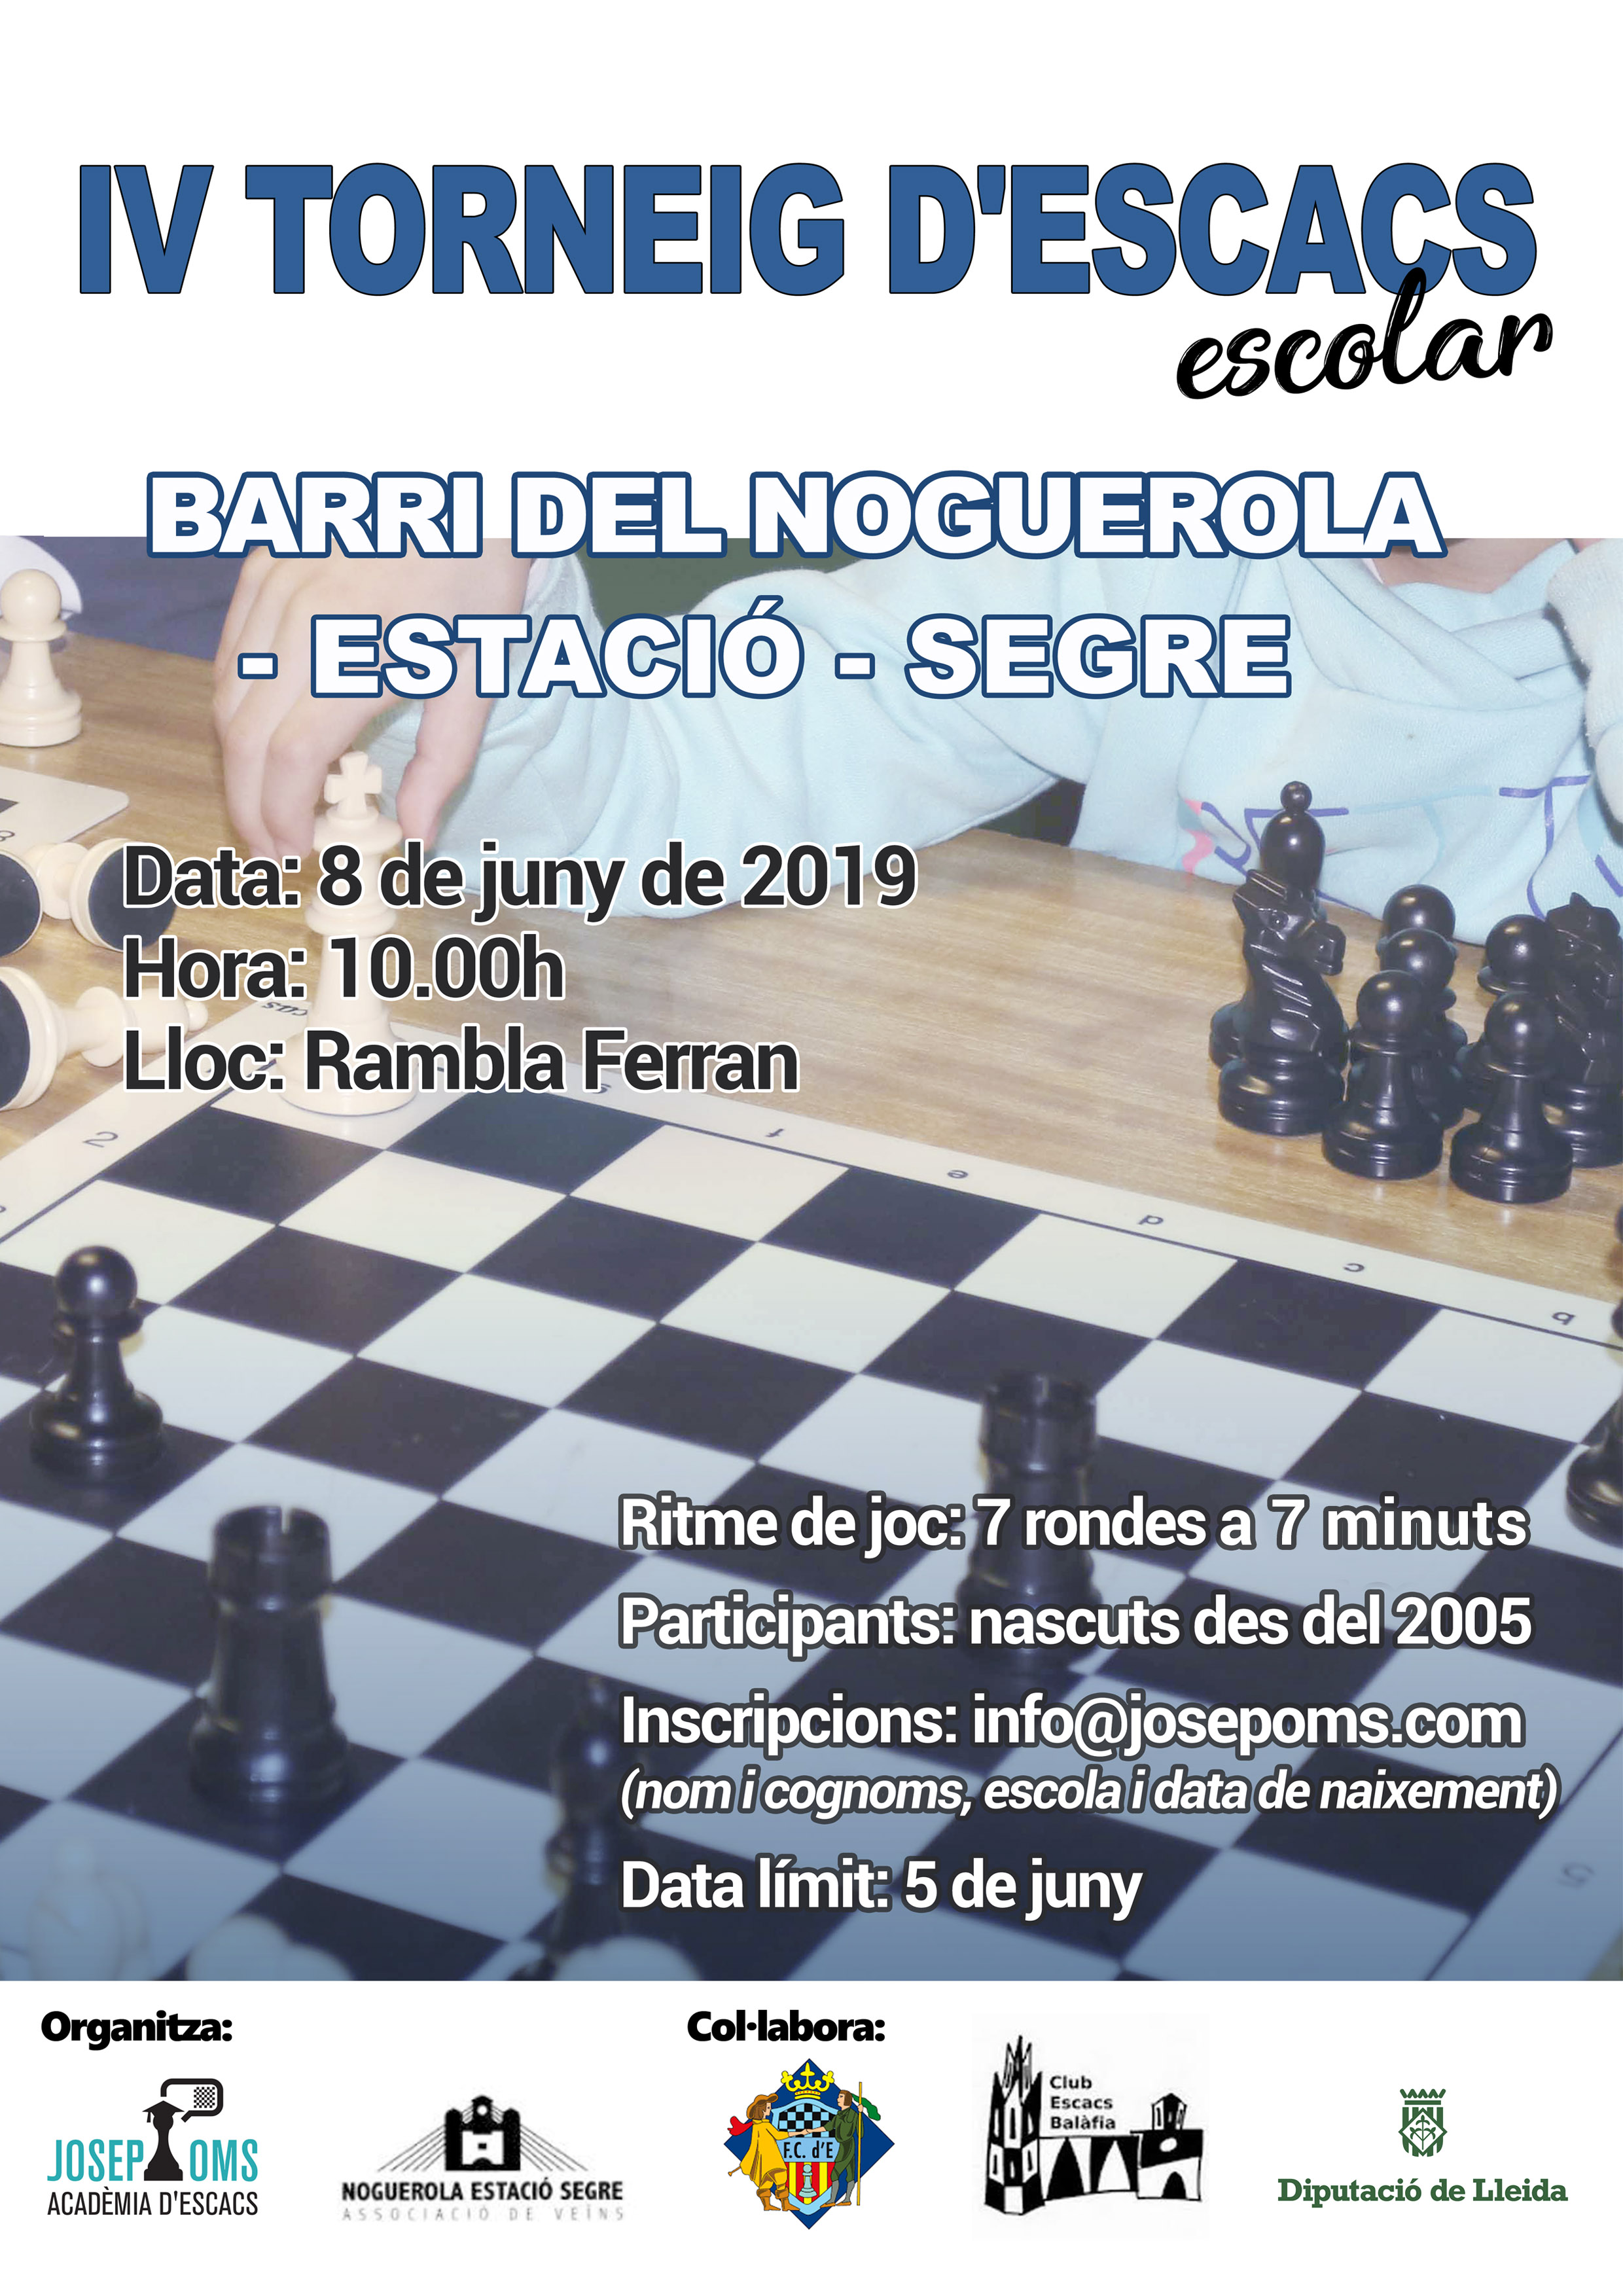 Torneig Escacs josep Oms - Lleida